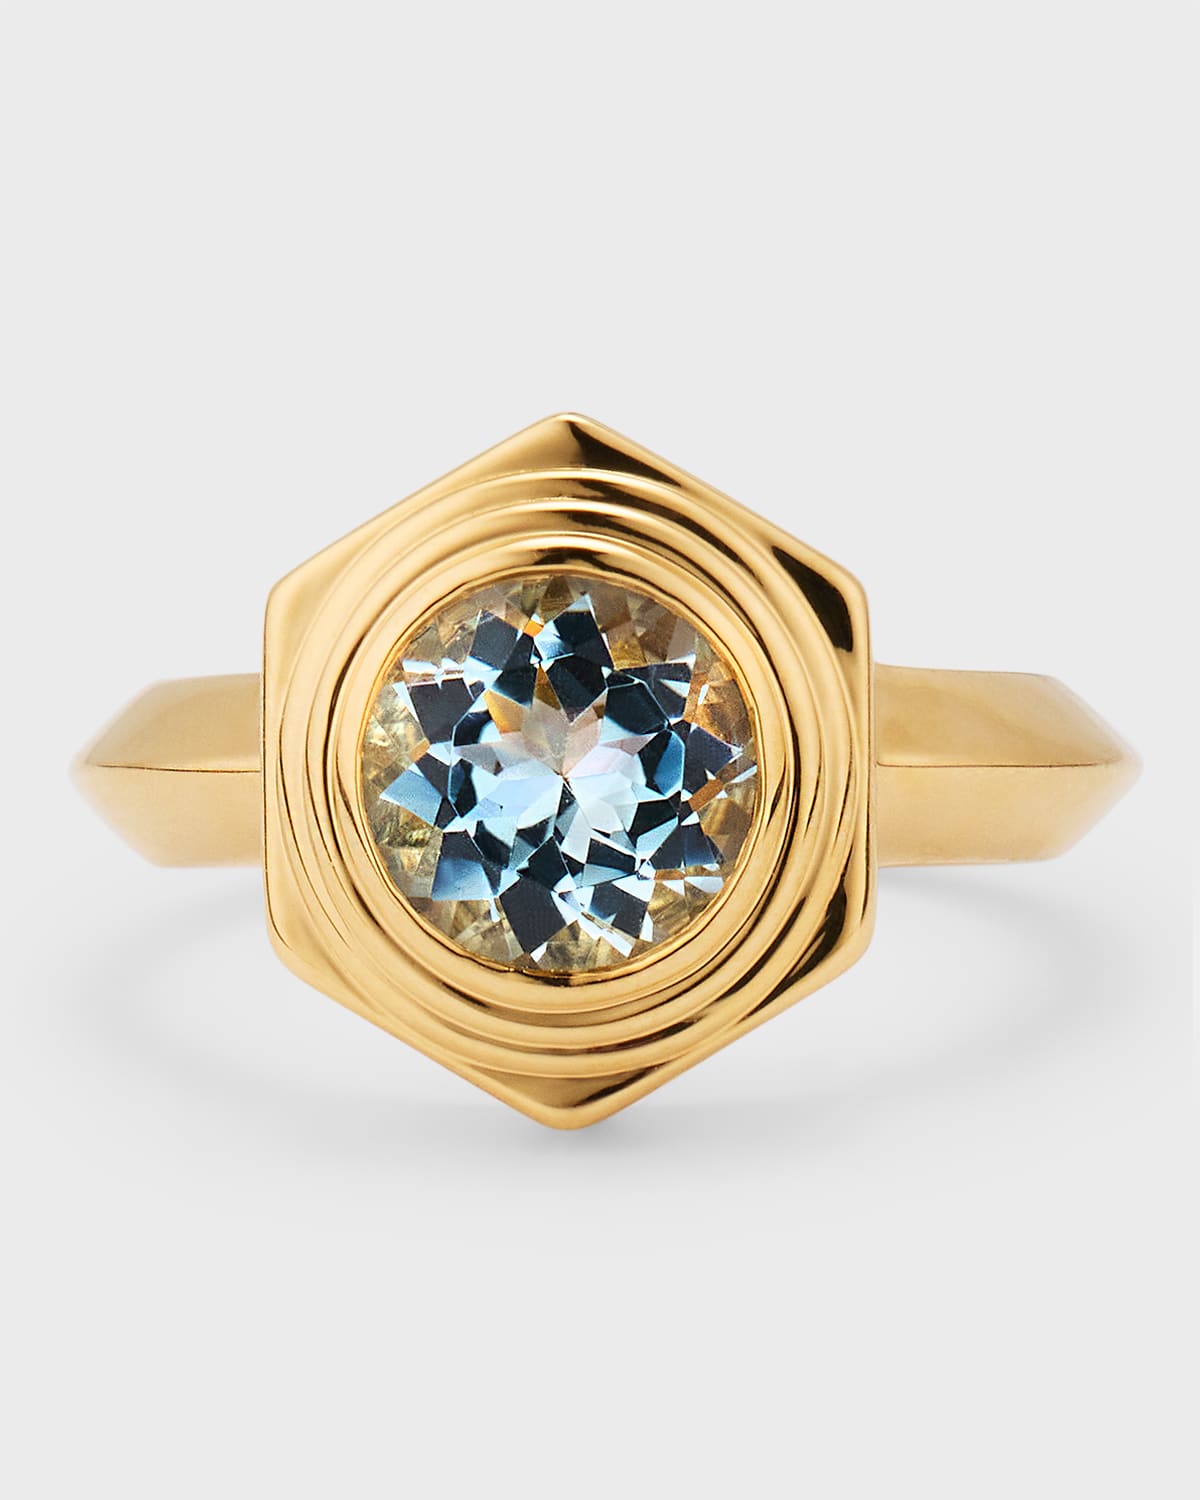 Hexed Ring with Aquamarine